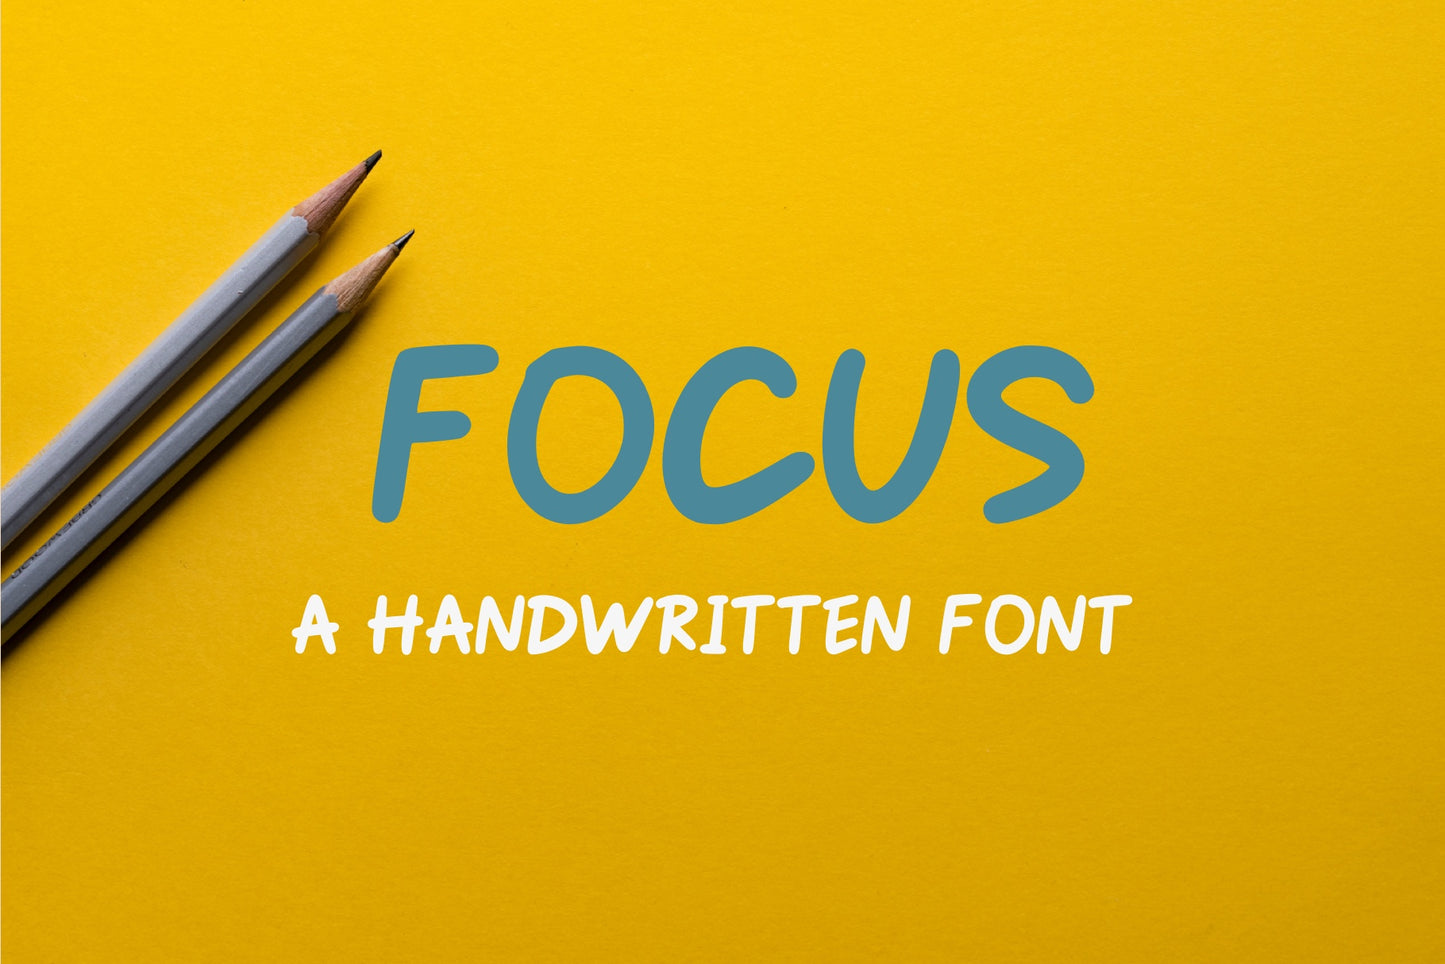 Handwritten Font - FOCUS